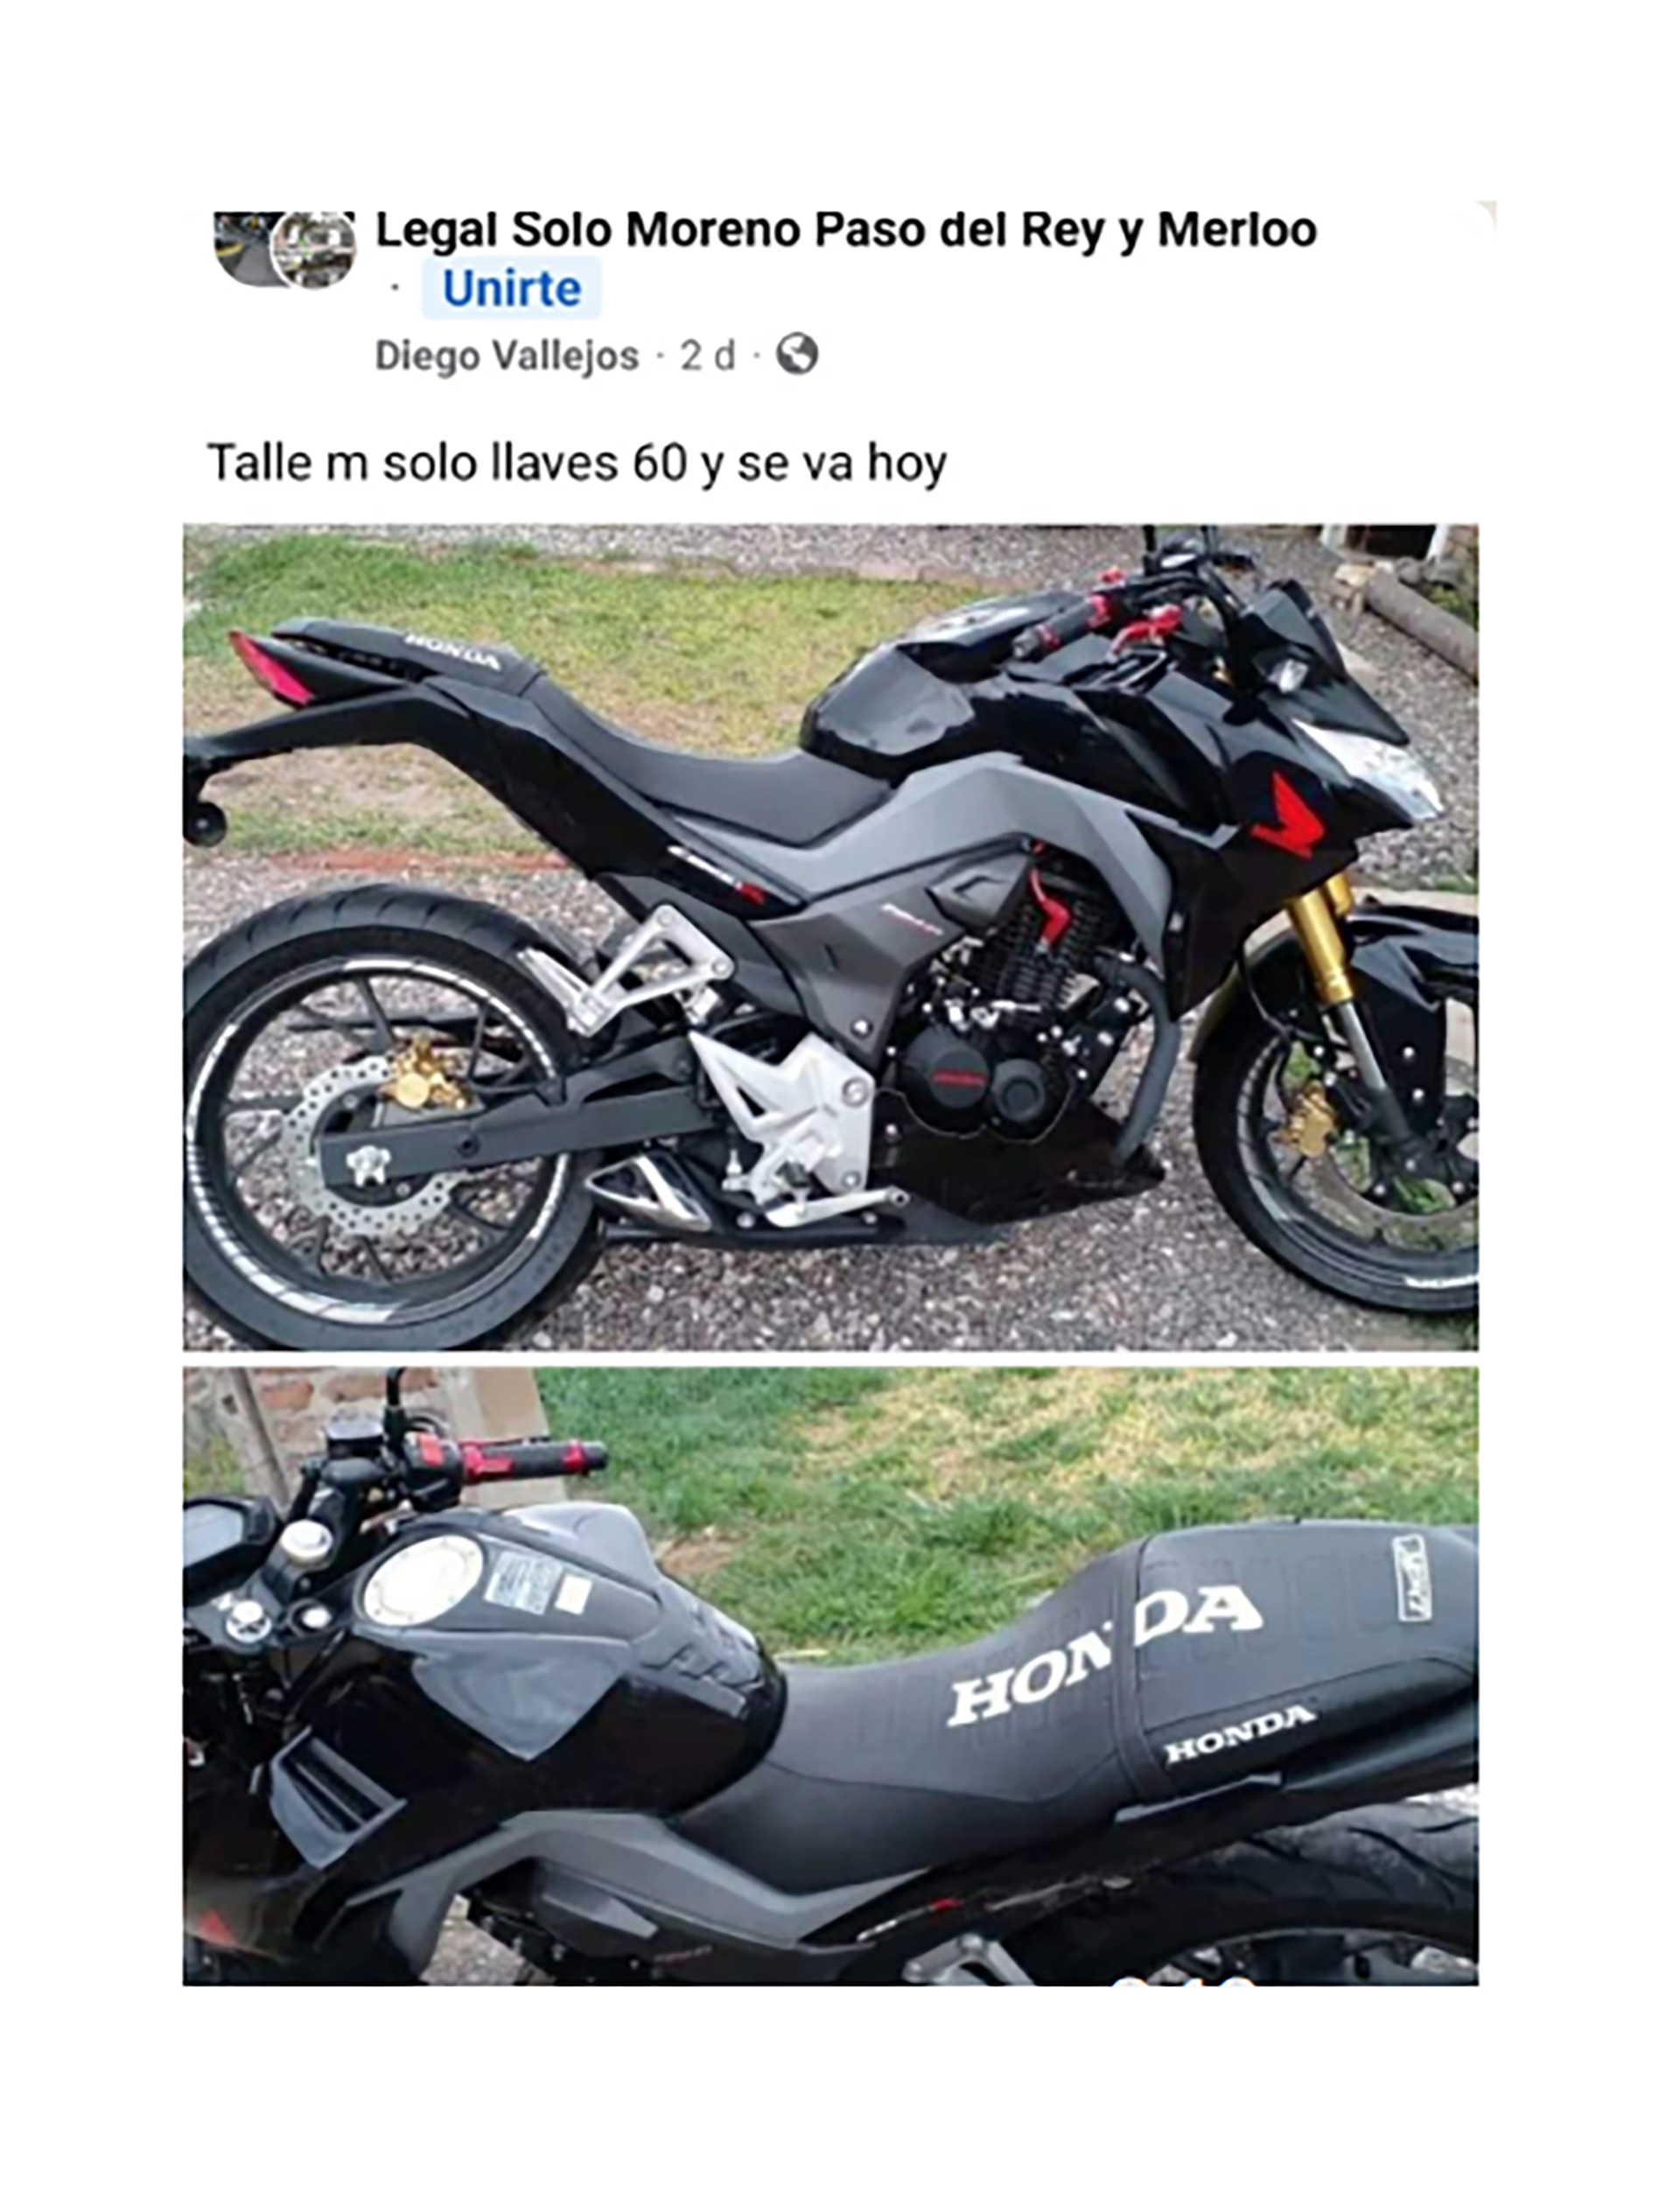 Uno de los tantos avisos en Facebook donde se venden motos robadas
